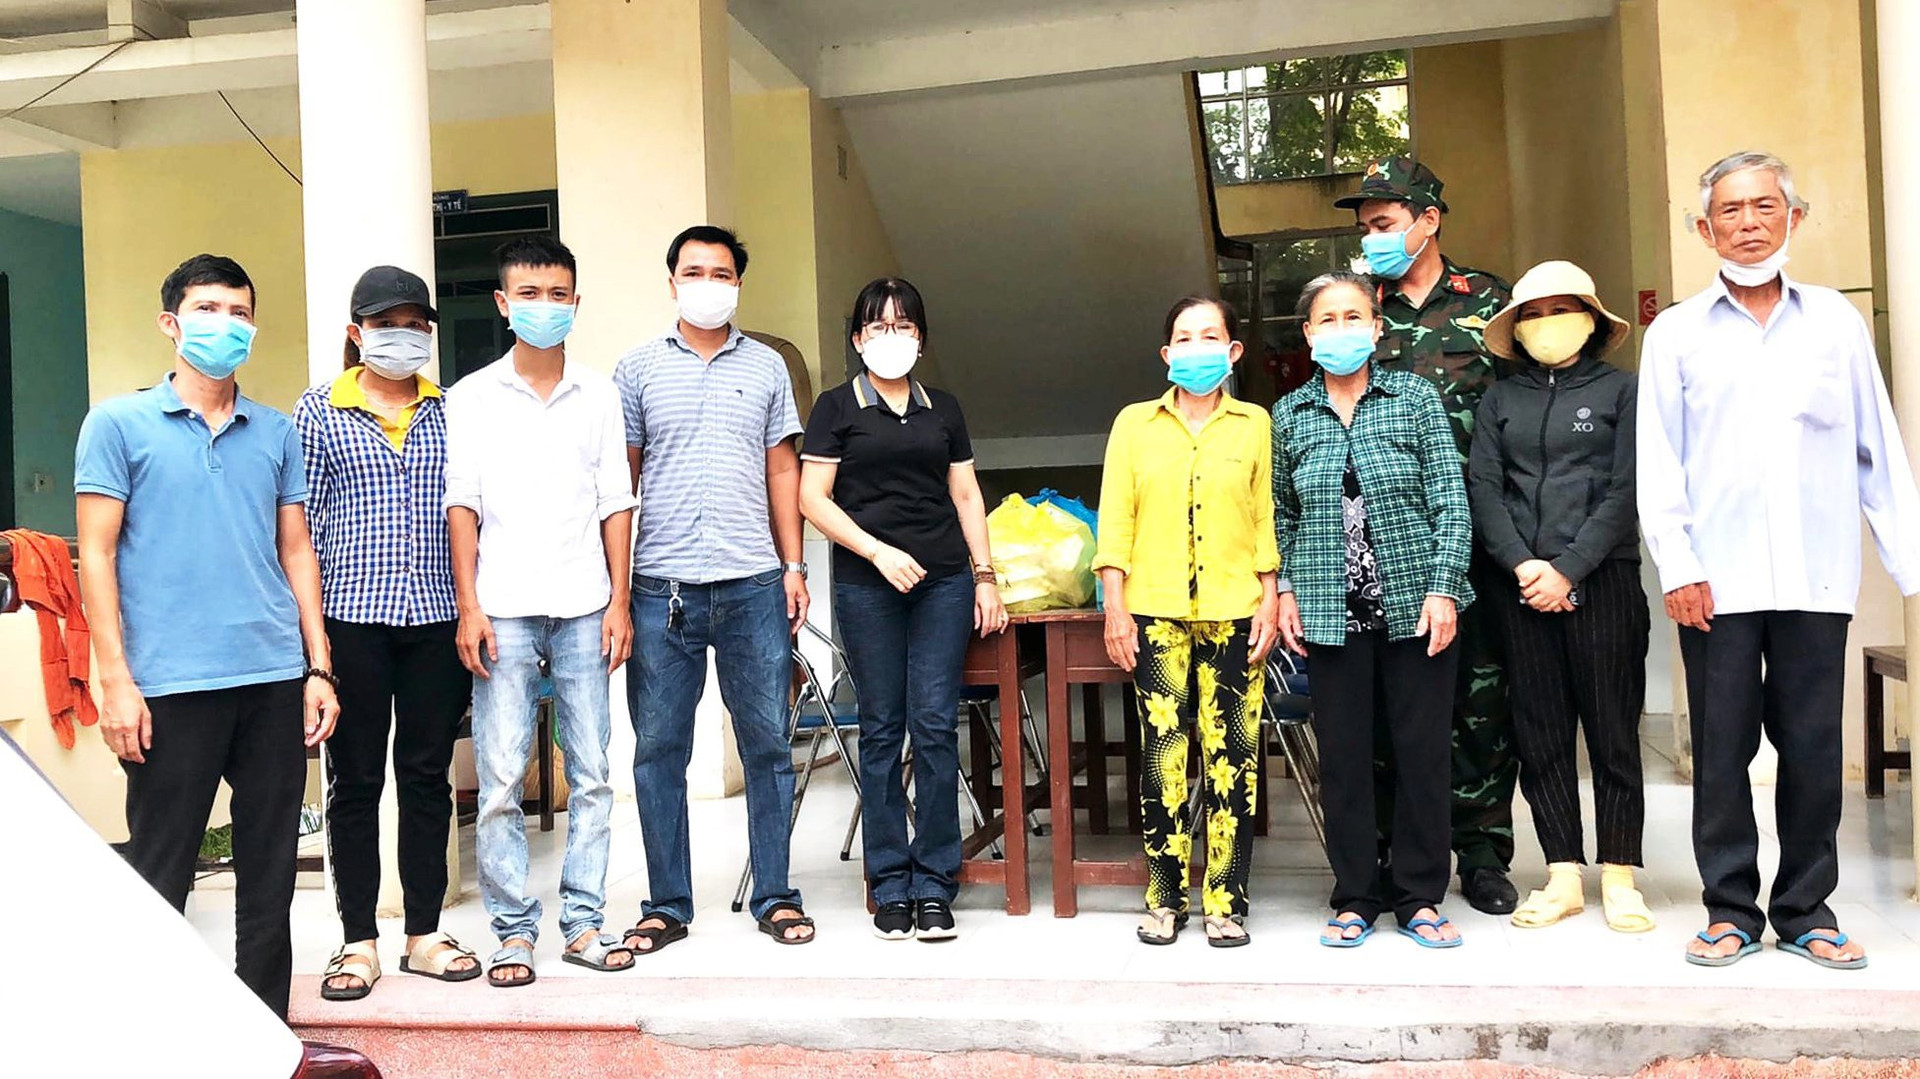 Nguyễn Hữu Trọng (thứ ba từ trái sang) cùng các thành viên trong nhóm miệt mài hỗ trợ người khó khăn và lực lượng chống dịch trong gần ba tháng qua. Ảnh: S.S